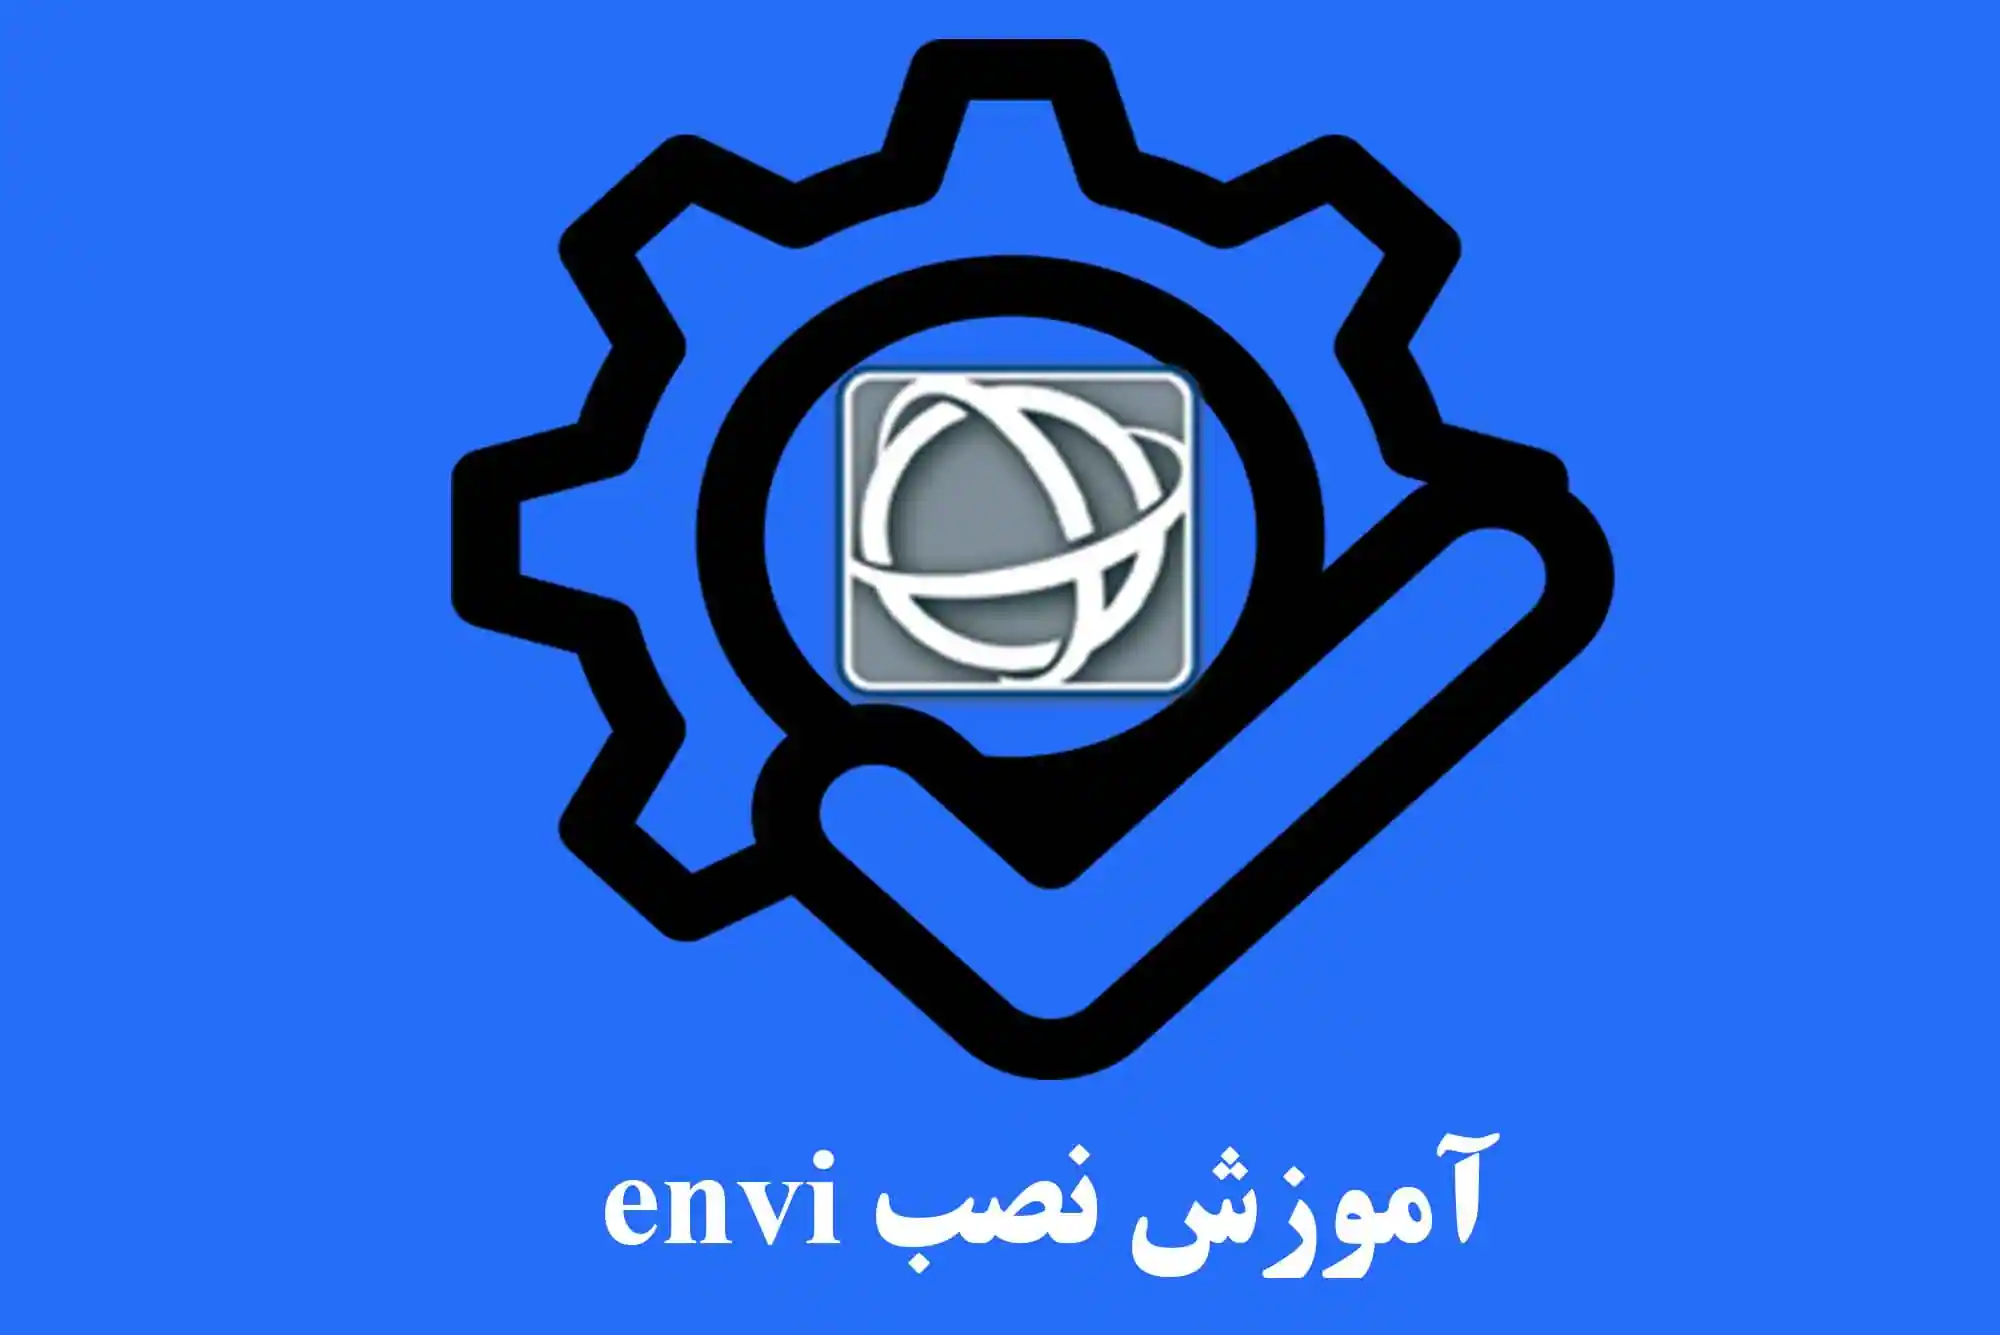 آموزش نصب نرم افزار envi نسخه 5.3 | به همراه لینک دانلود